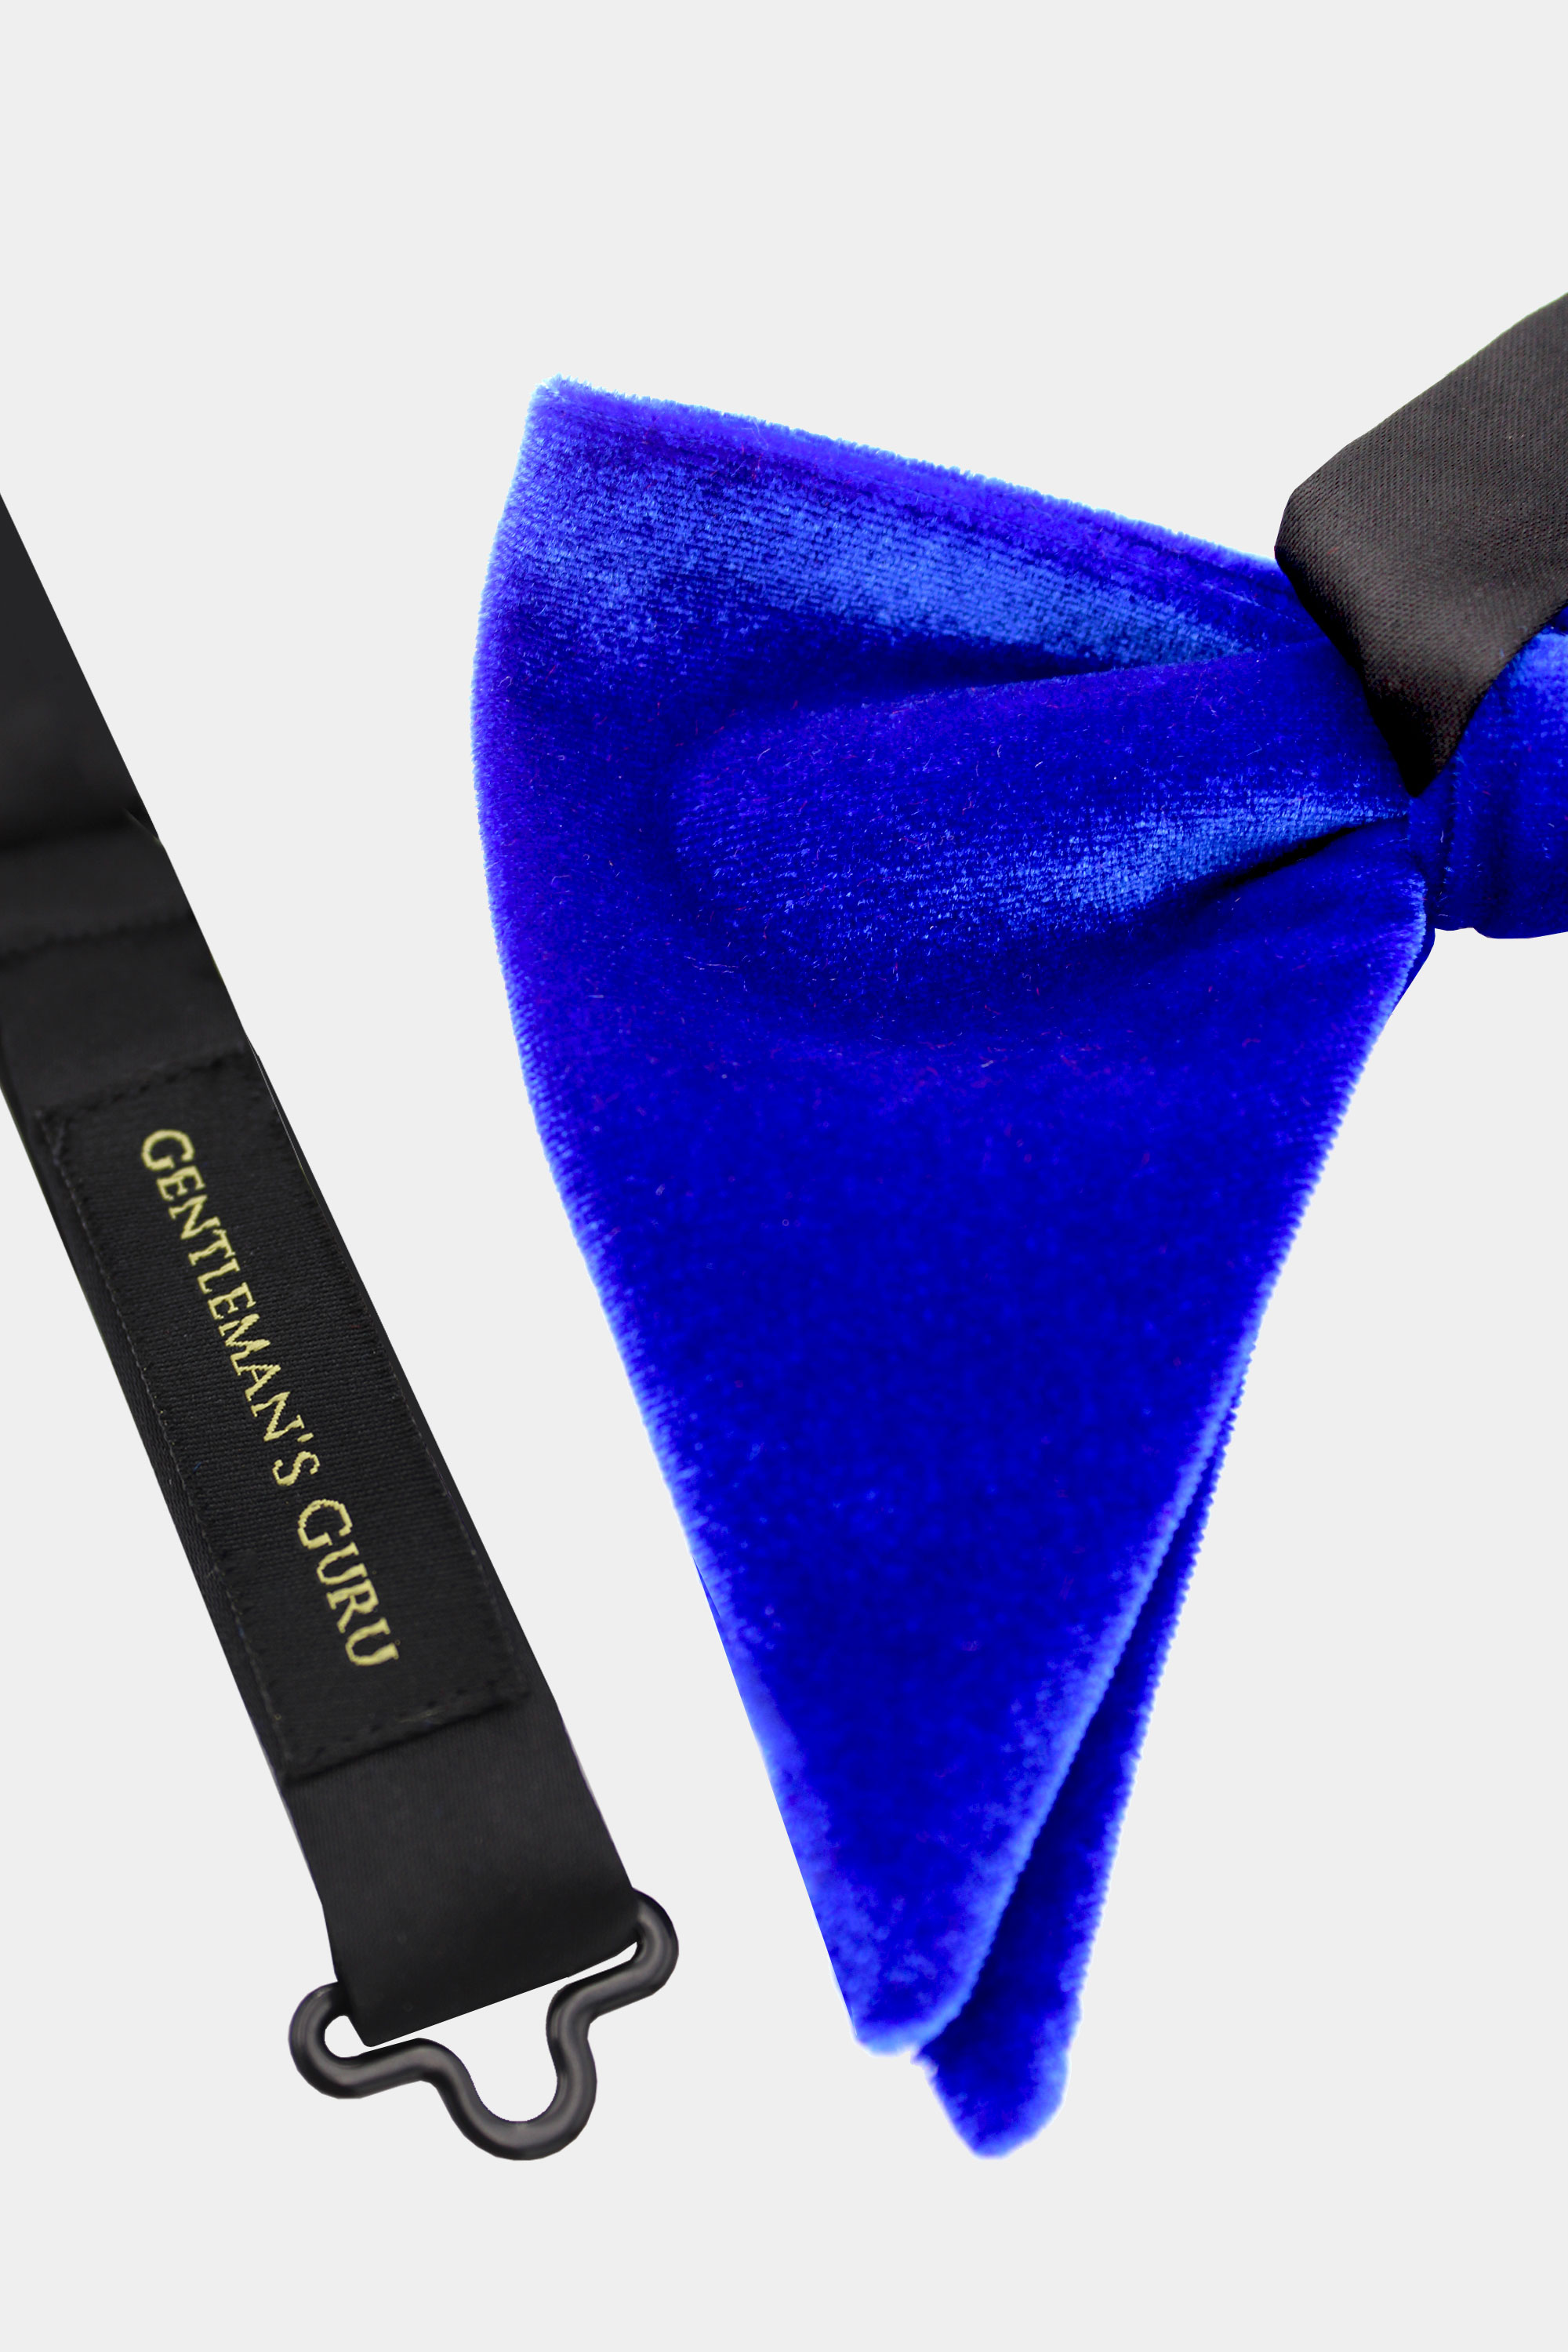 Blue-Velvet-Bow-Tie-from-Gentlemansguru.com